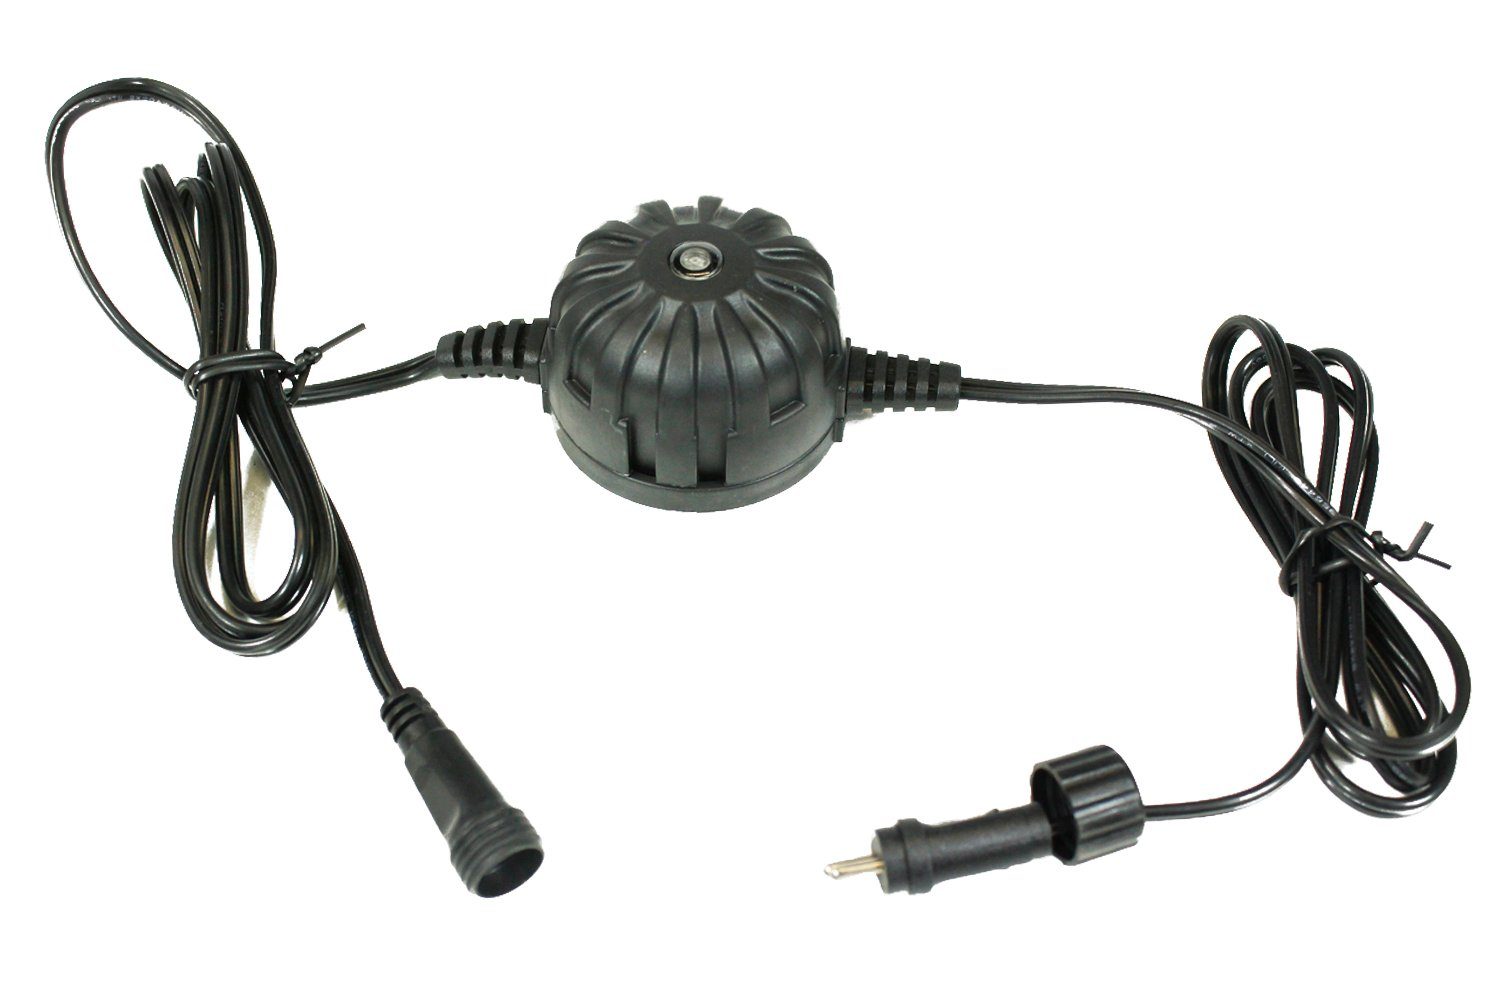 für Lichtsensor 12V Dämmerungssensor and (Plug Springbrunnenbeleuchtung für Gartenbeleuchtung, Arnusa Play), auch